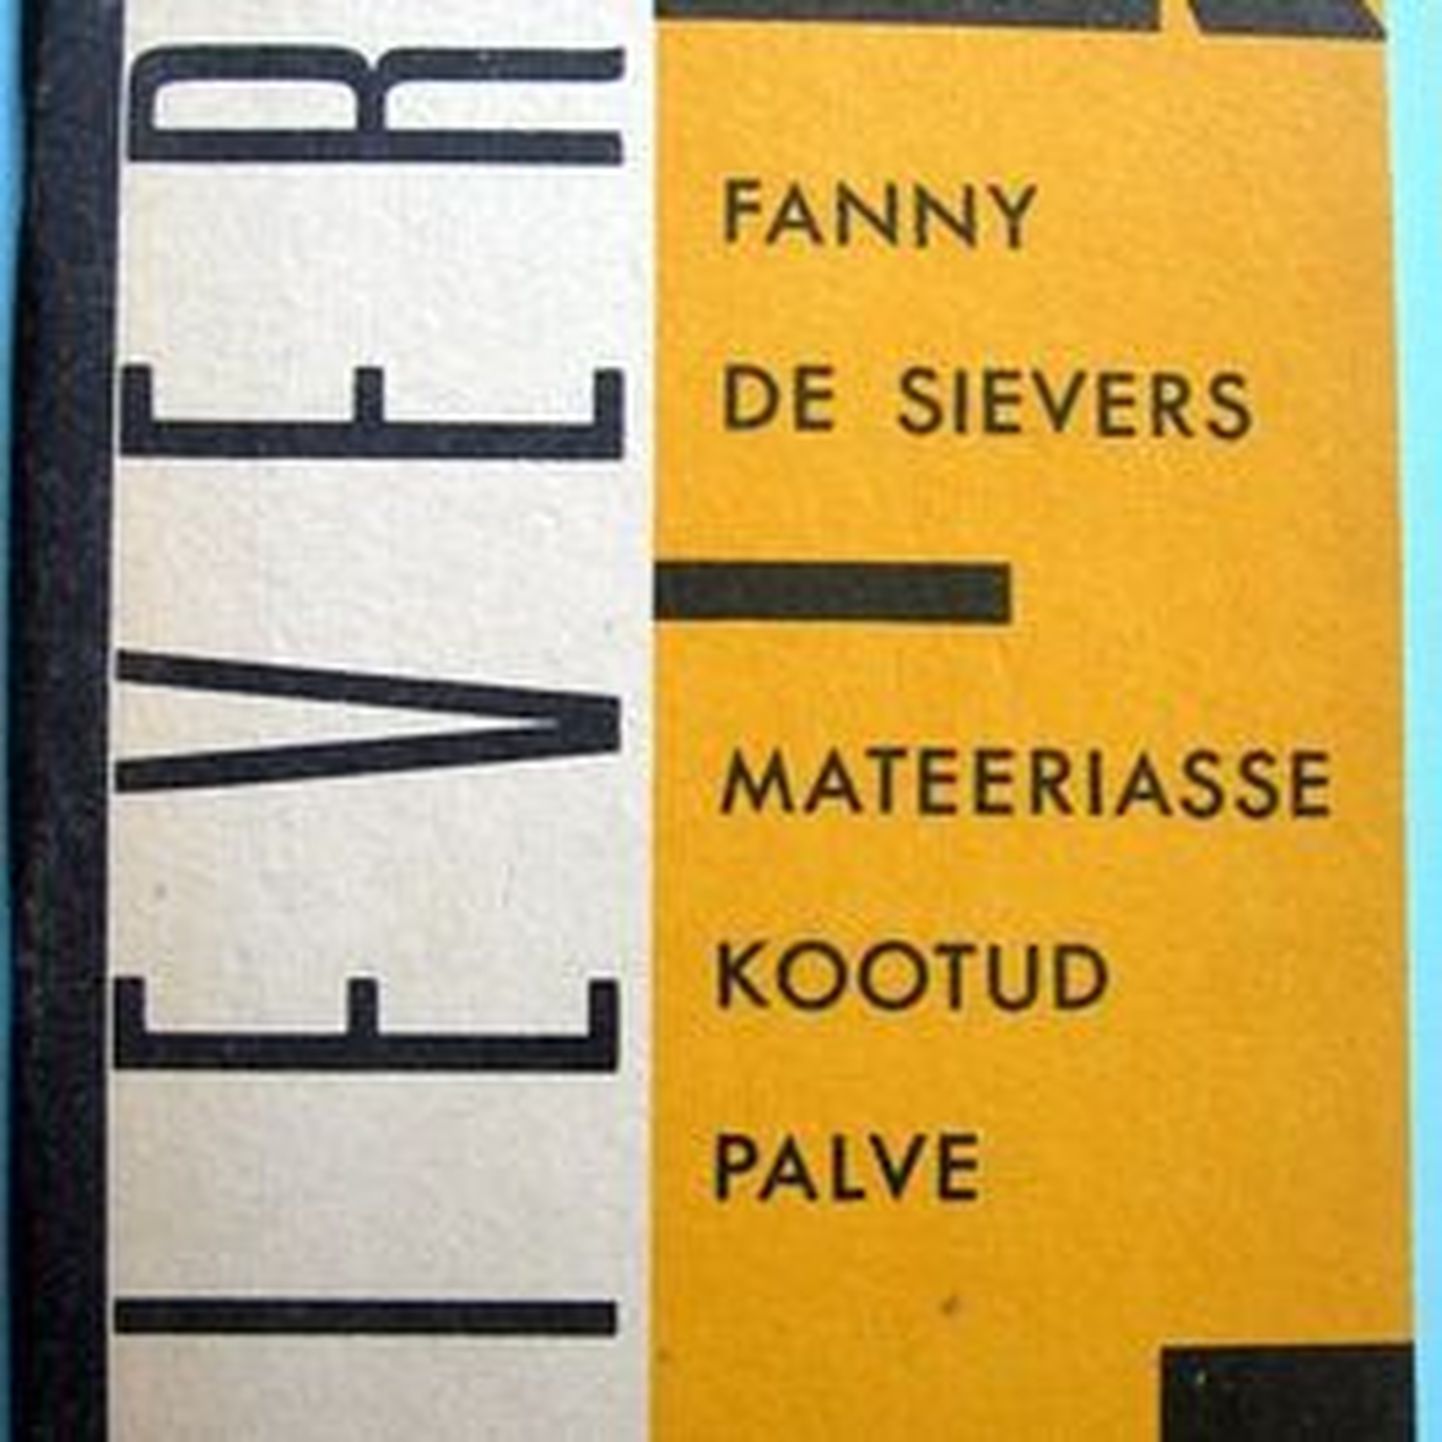 Eestlastest lugejale on üks tuntumaid Fanny de Siversi esseekogumik "Mateeriasse kogutud palve", mis ilmus Loomingu Raamatukogus 1992. aastal.